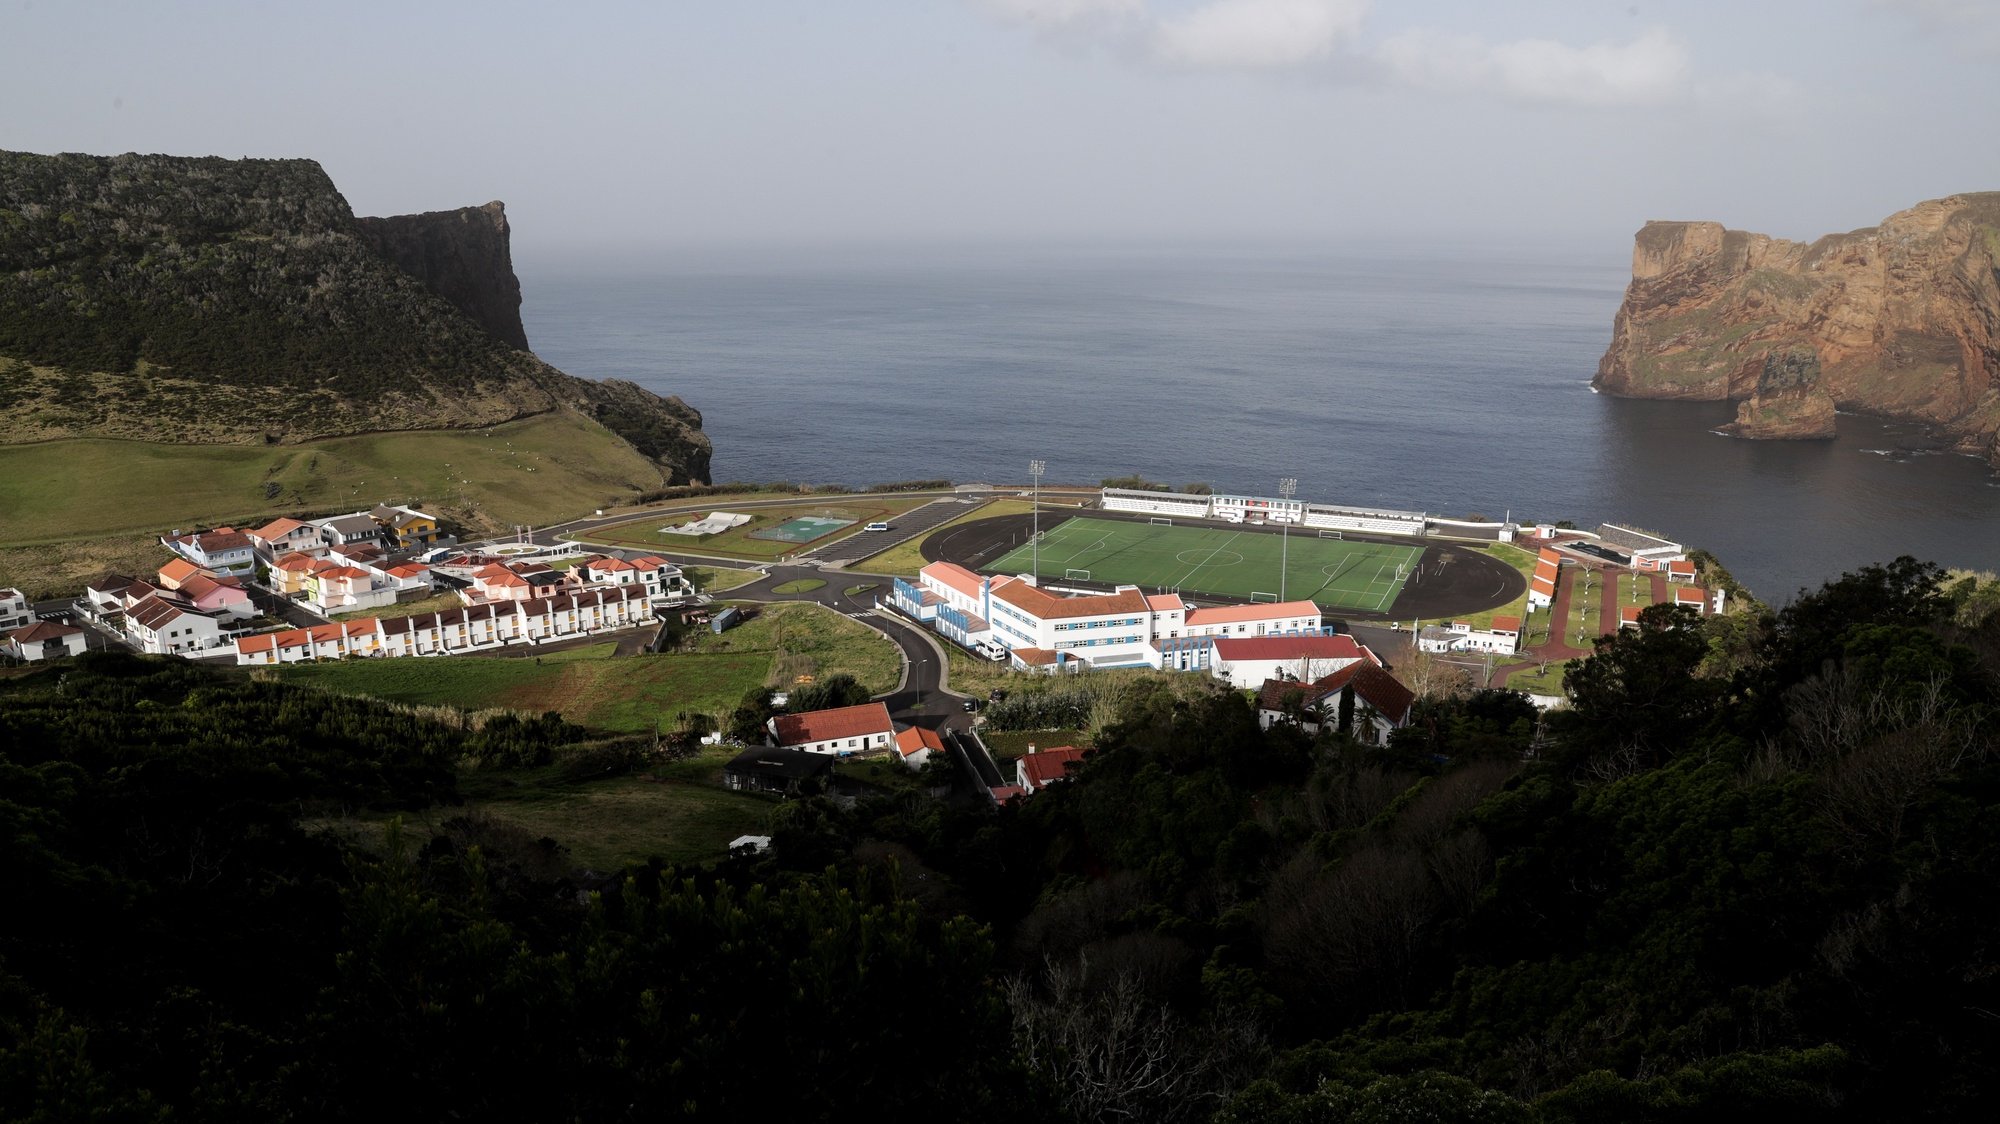 Vista geral de parte da vila de Velas com o campo de futebol e escola, na ilha de São Jorge nos Açores, 29 de março de 2022. TIAGO PETINGA/LUSA